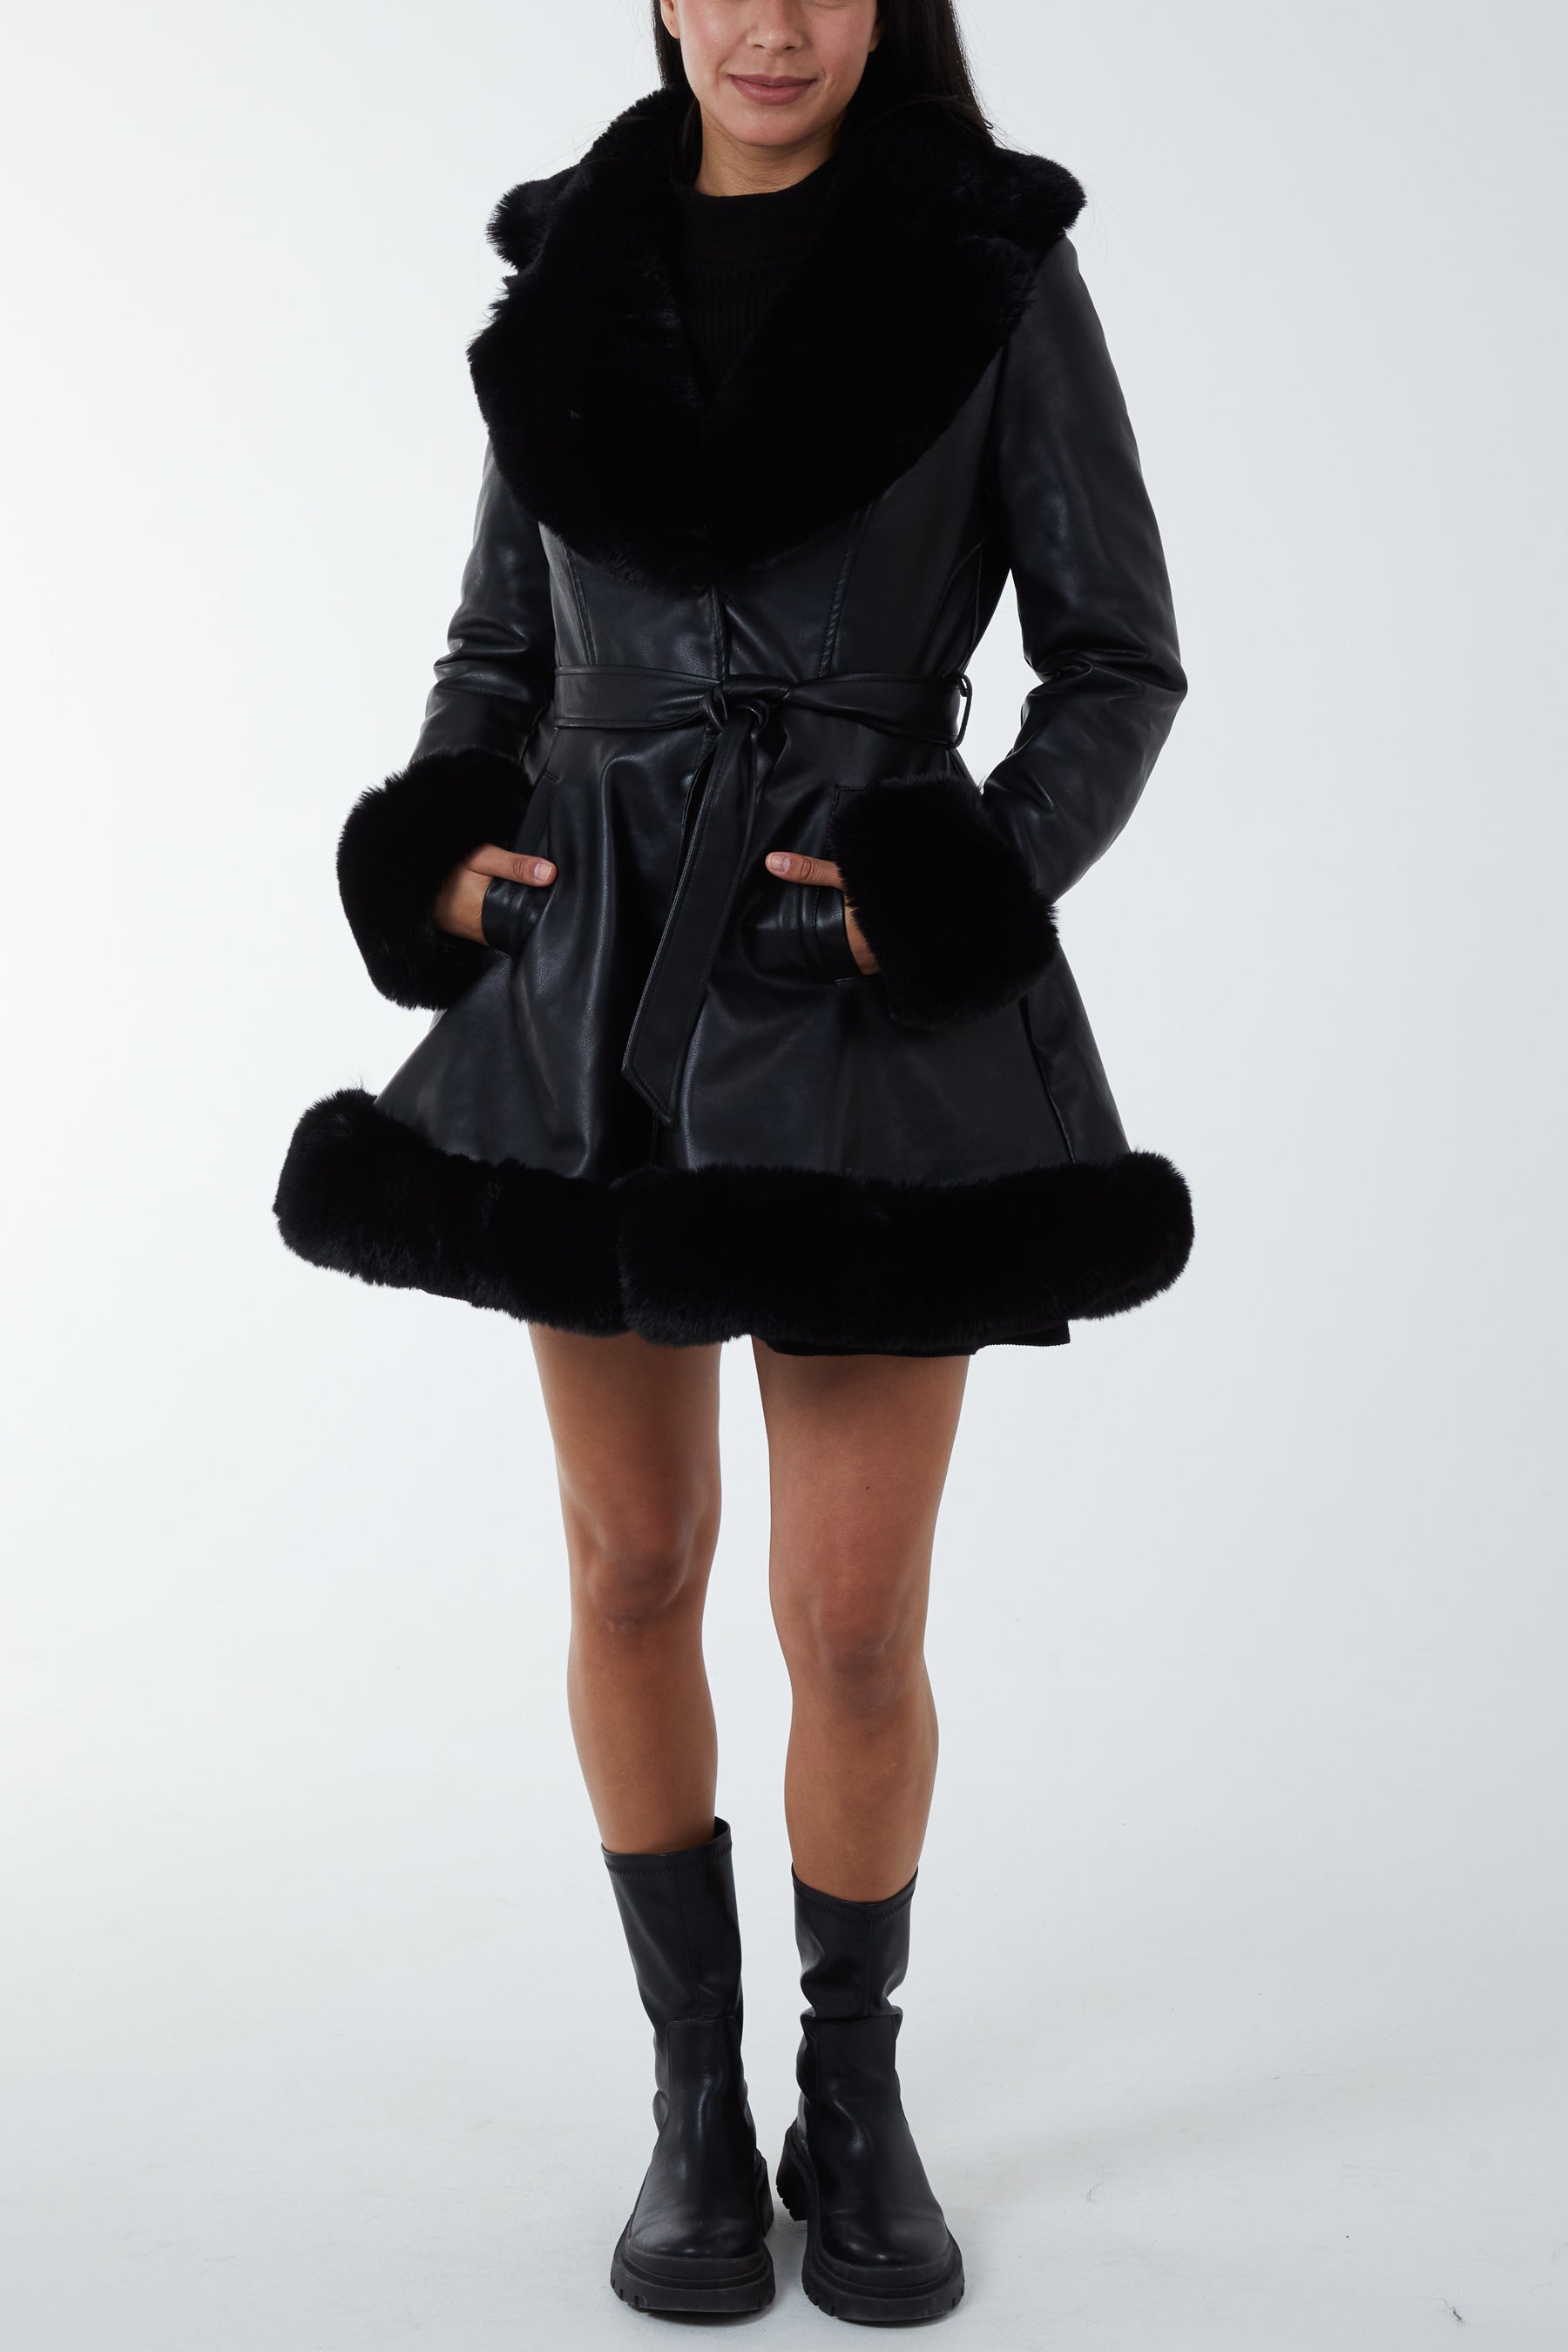 Fur Trimmed Belted Leather Skater Skirt Coat